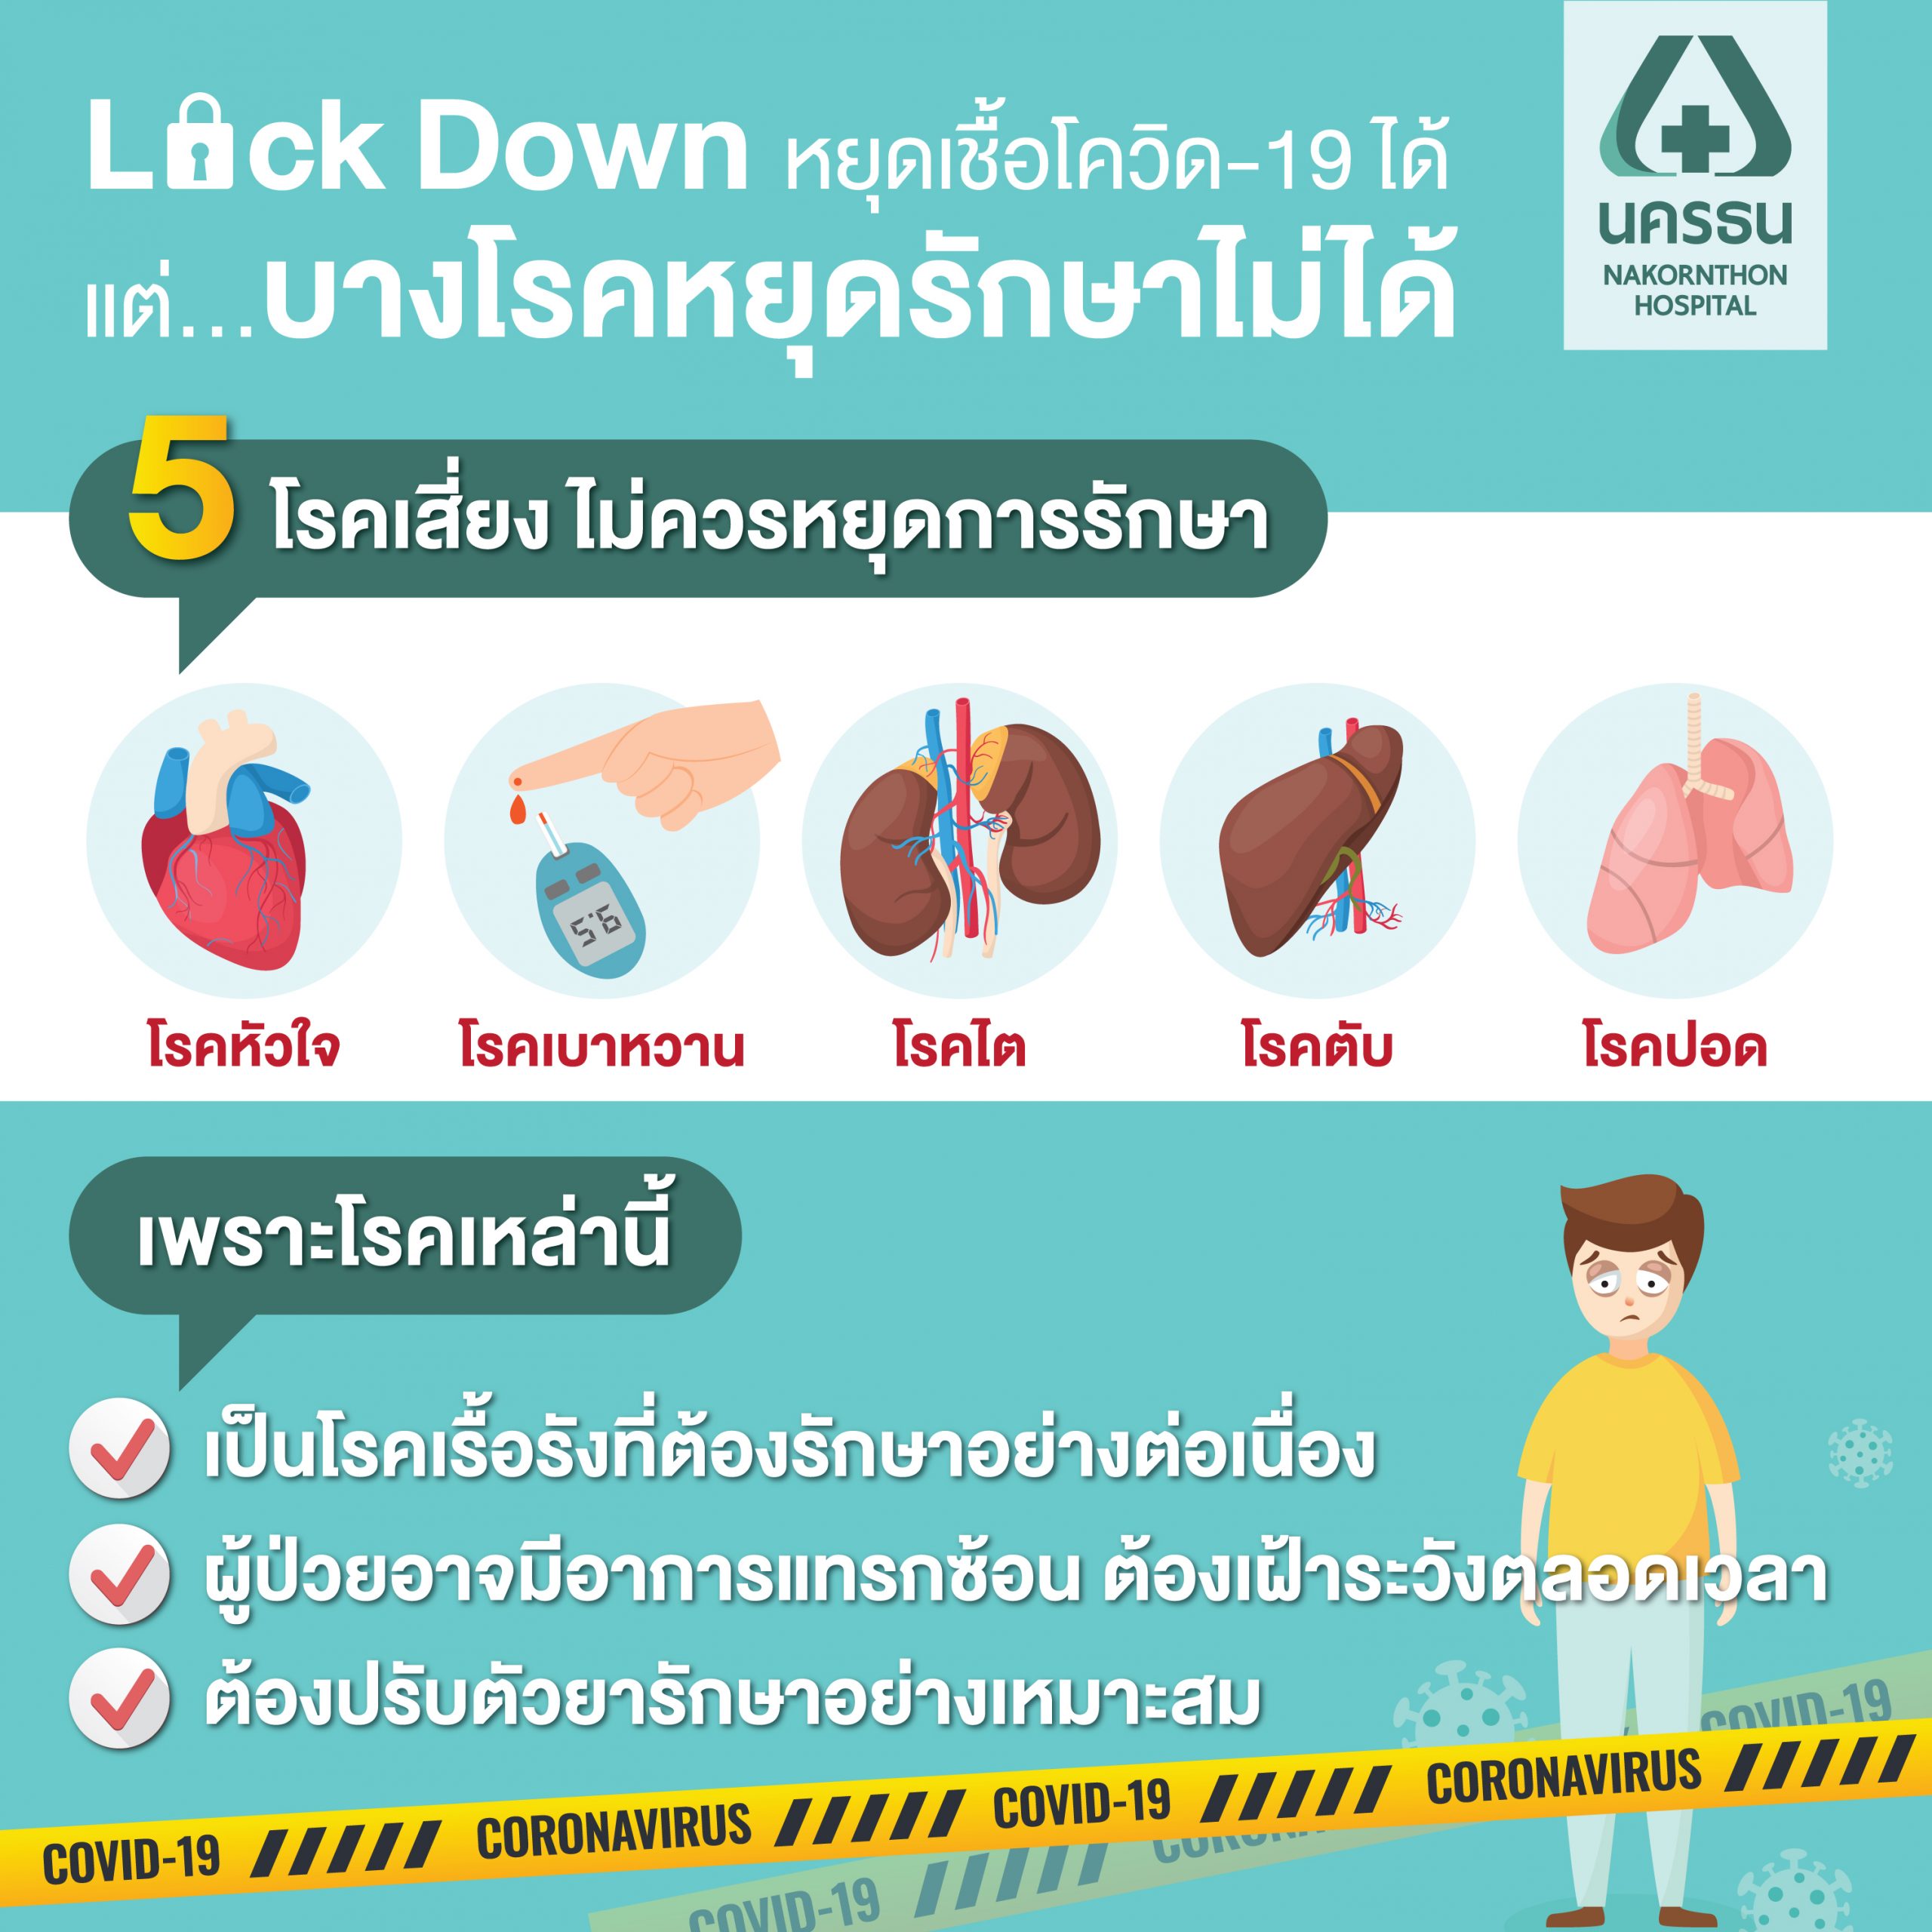 Lock Down หยุดเชื้อไวรัส ลดความเสี่ยงติดเชื้อโควิด-19 แต่โรคประจำตัว Lock Down หยุดรักษาไม่ได้.ยิ่งเสี่ยงสูง